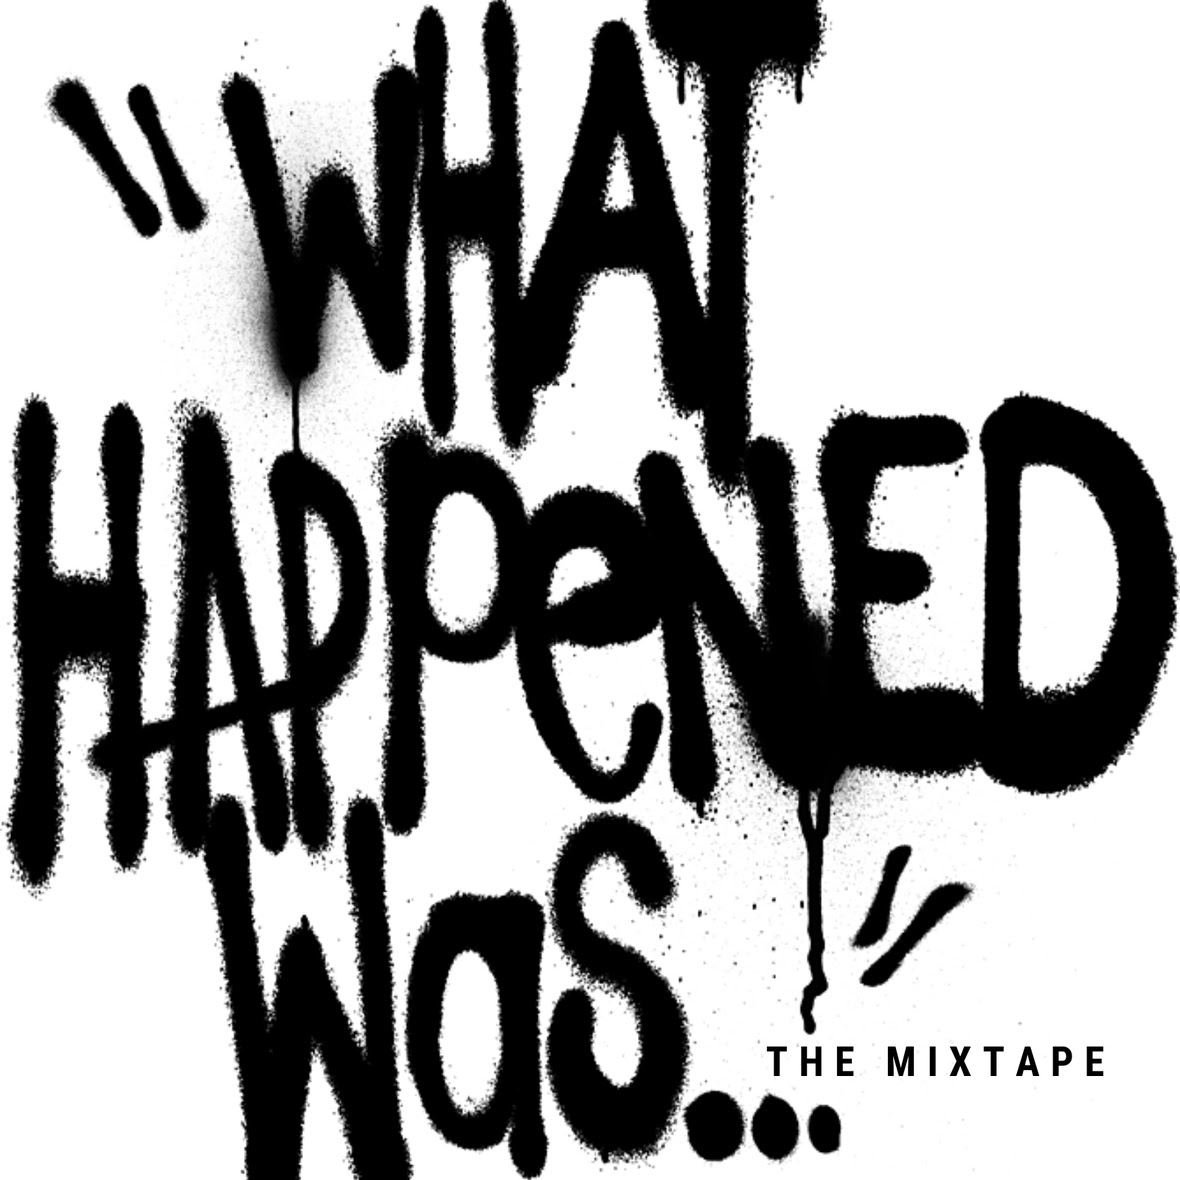 kj52-whw-the mixtape-cover